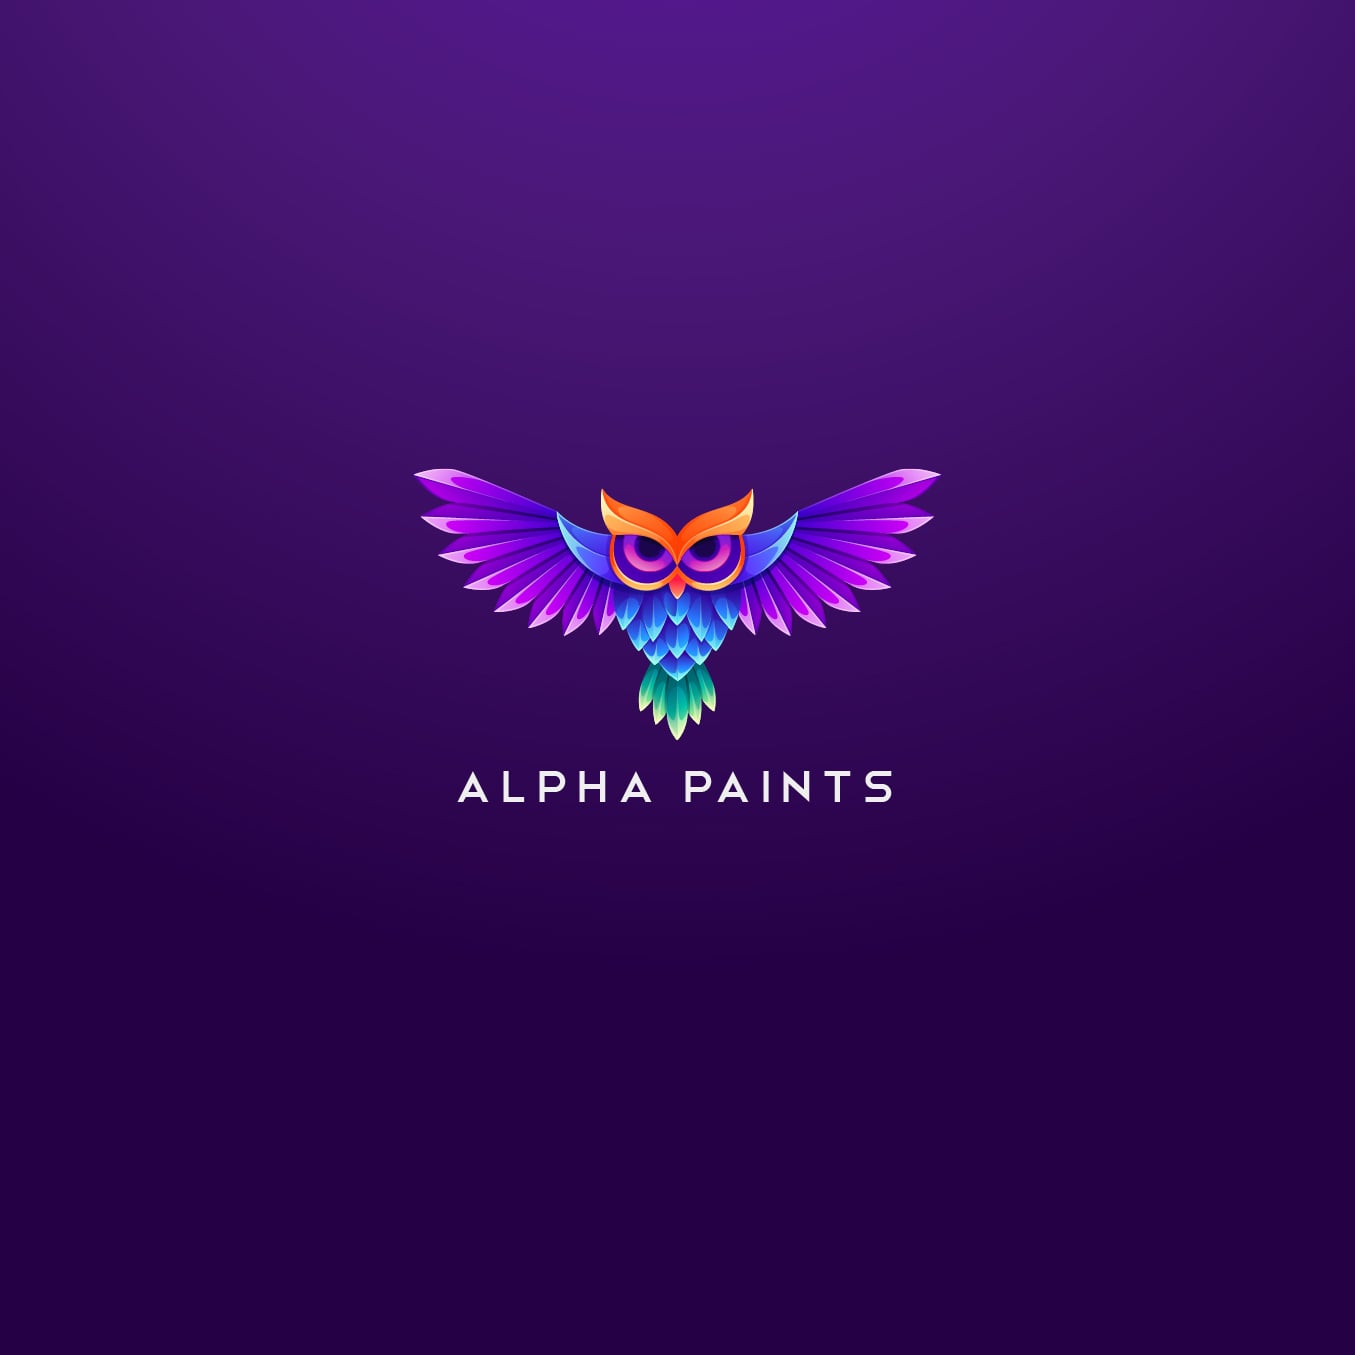 Alpha Paints